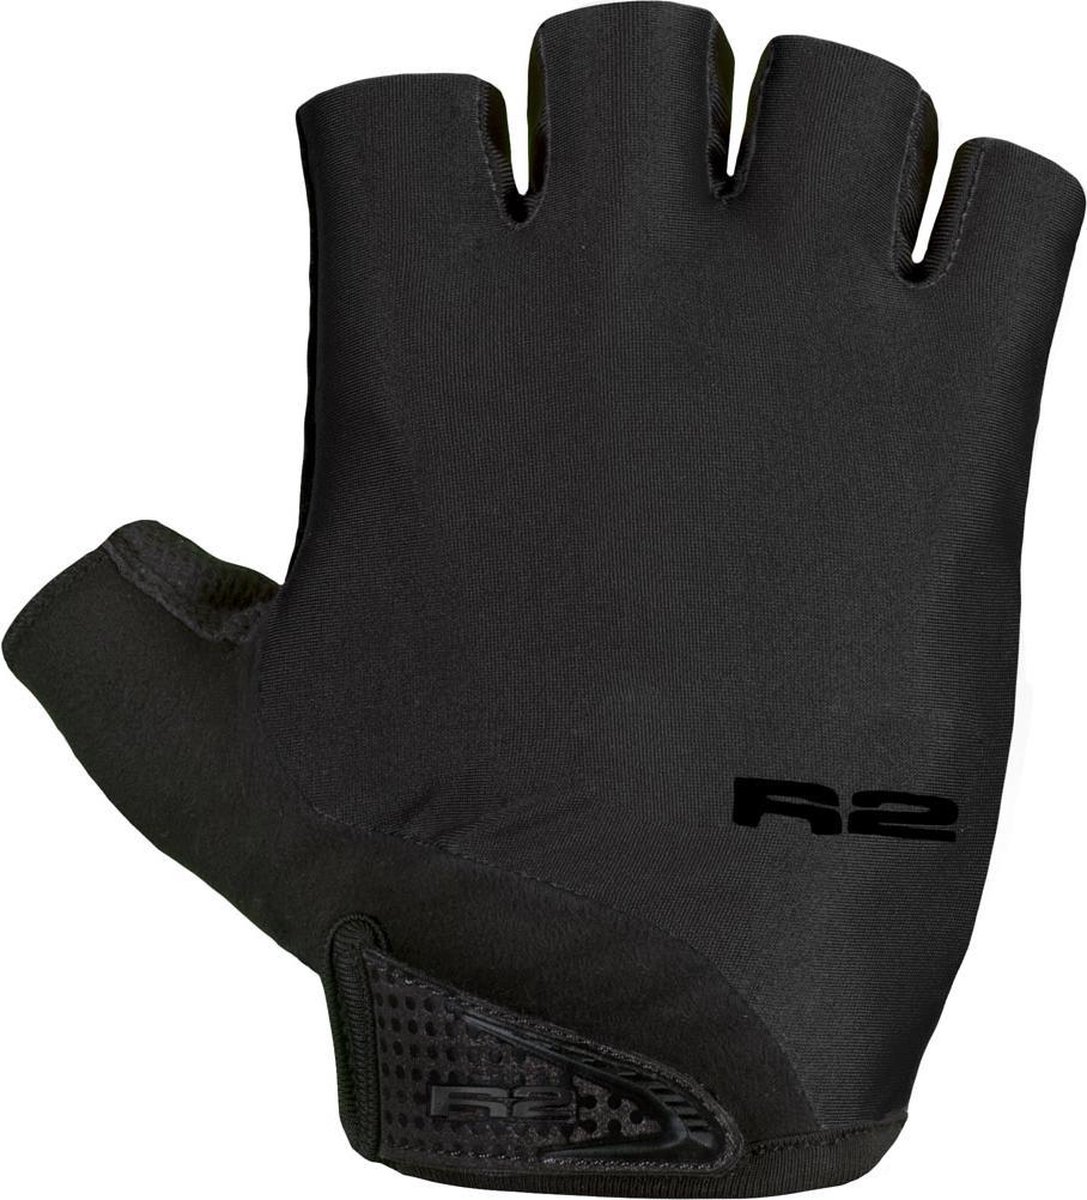 Riley ProGel Fiets Handschoenen - Luxe dunne handschoenen met extra Comfort en Veiligheid - Geen kramp meer in de handen -Zwart Maat S (19 - 20cm)